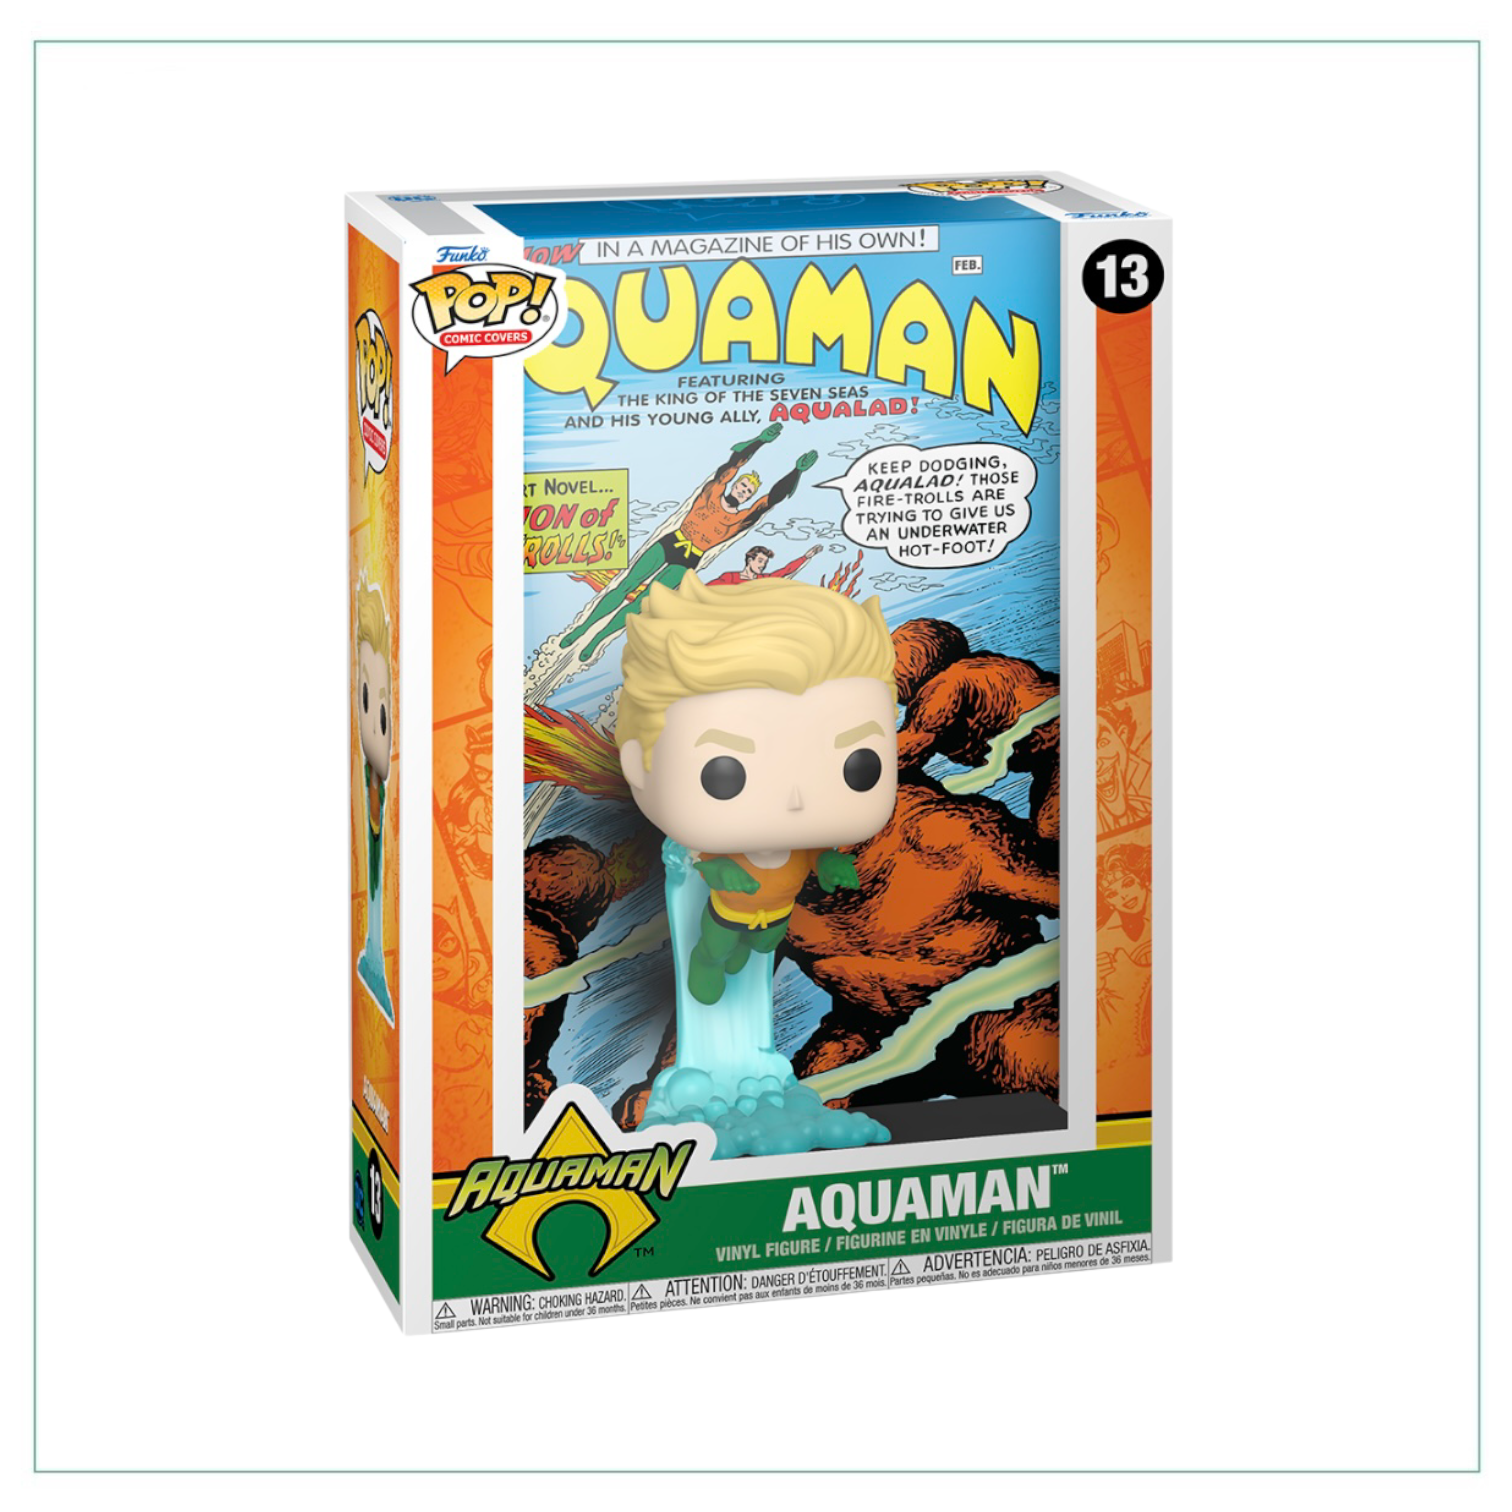 Aquaman #13 Funko Pop! Comic Cover Aquaman